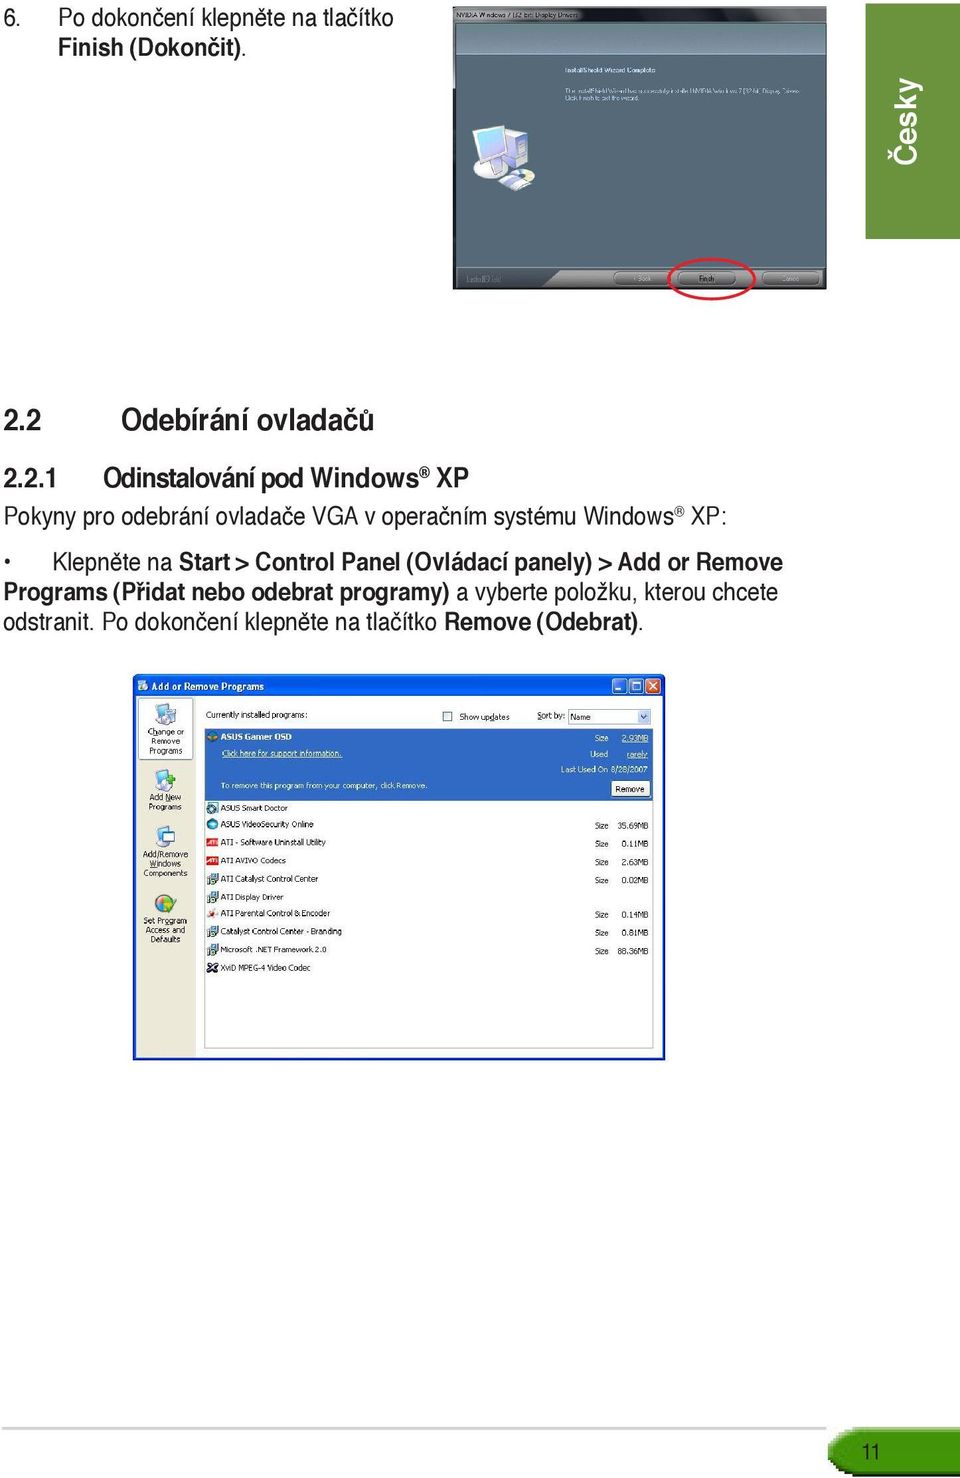 operačním systému Windows XP: Klepněte na Start > Control Panel (Ovládací panely) > Add or